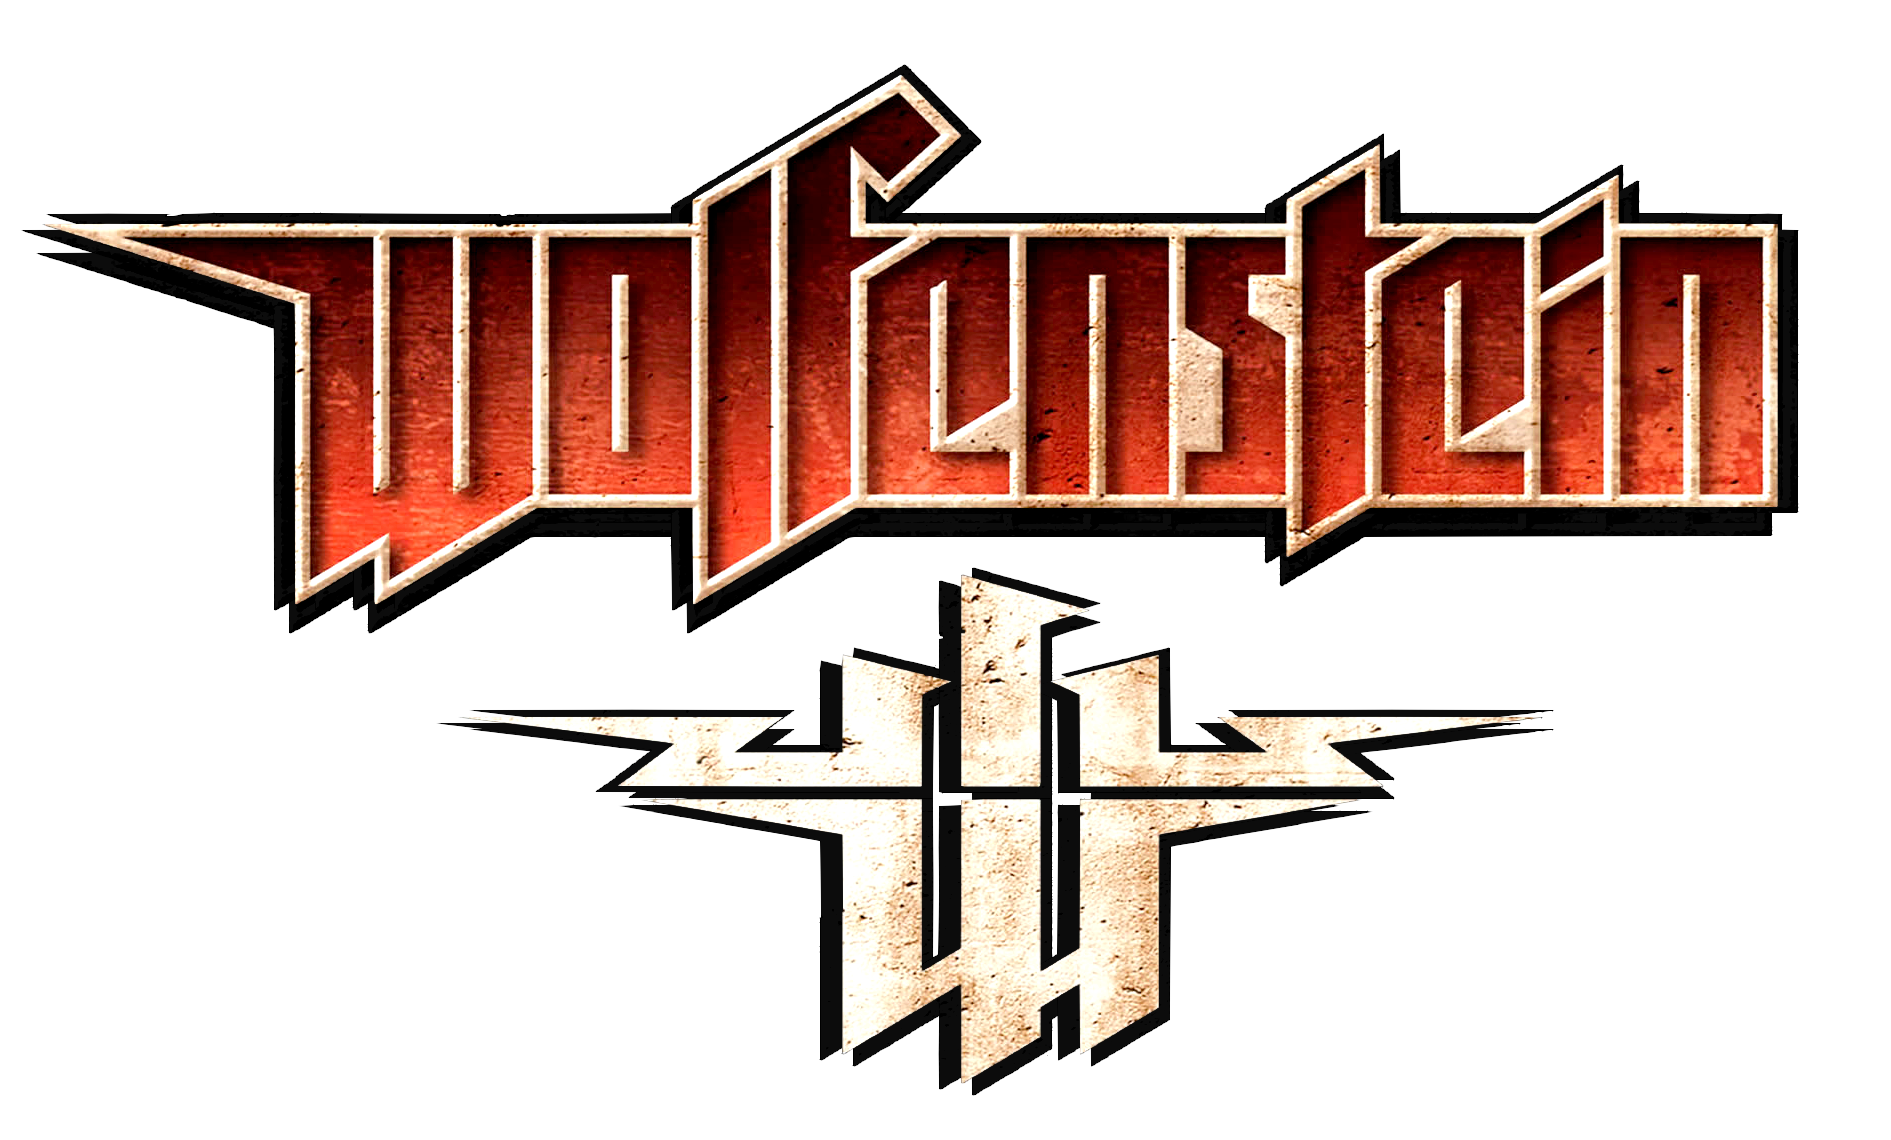 Wolfenstein - Wikipedia